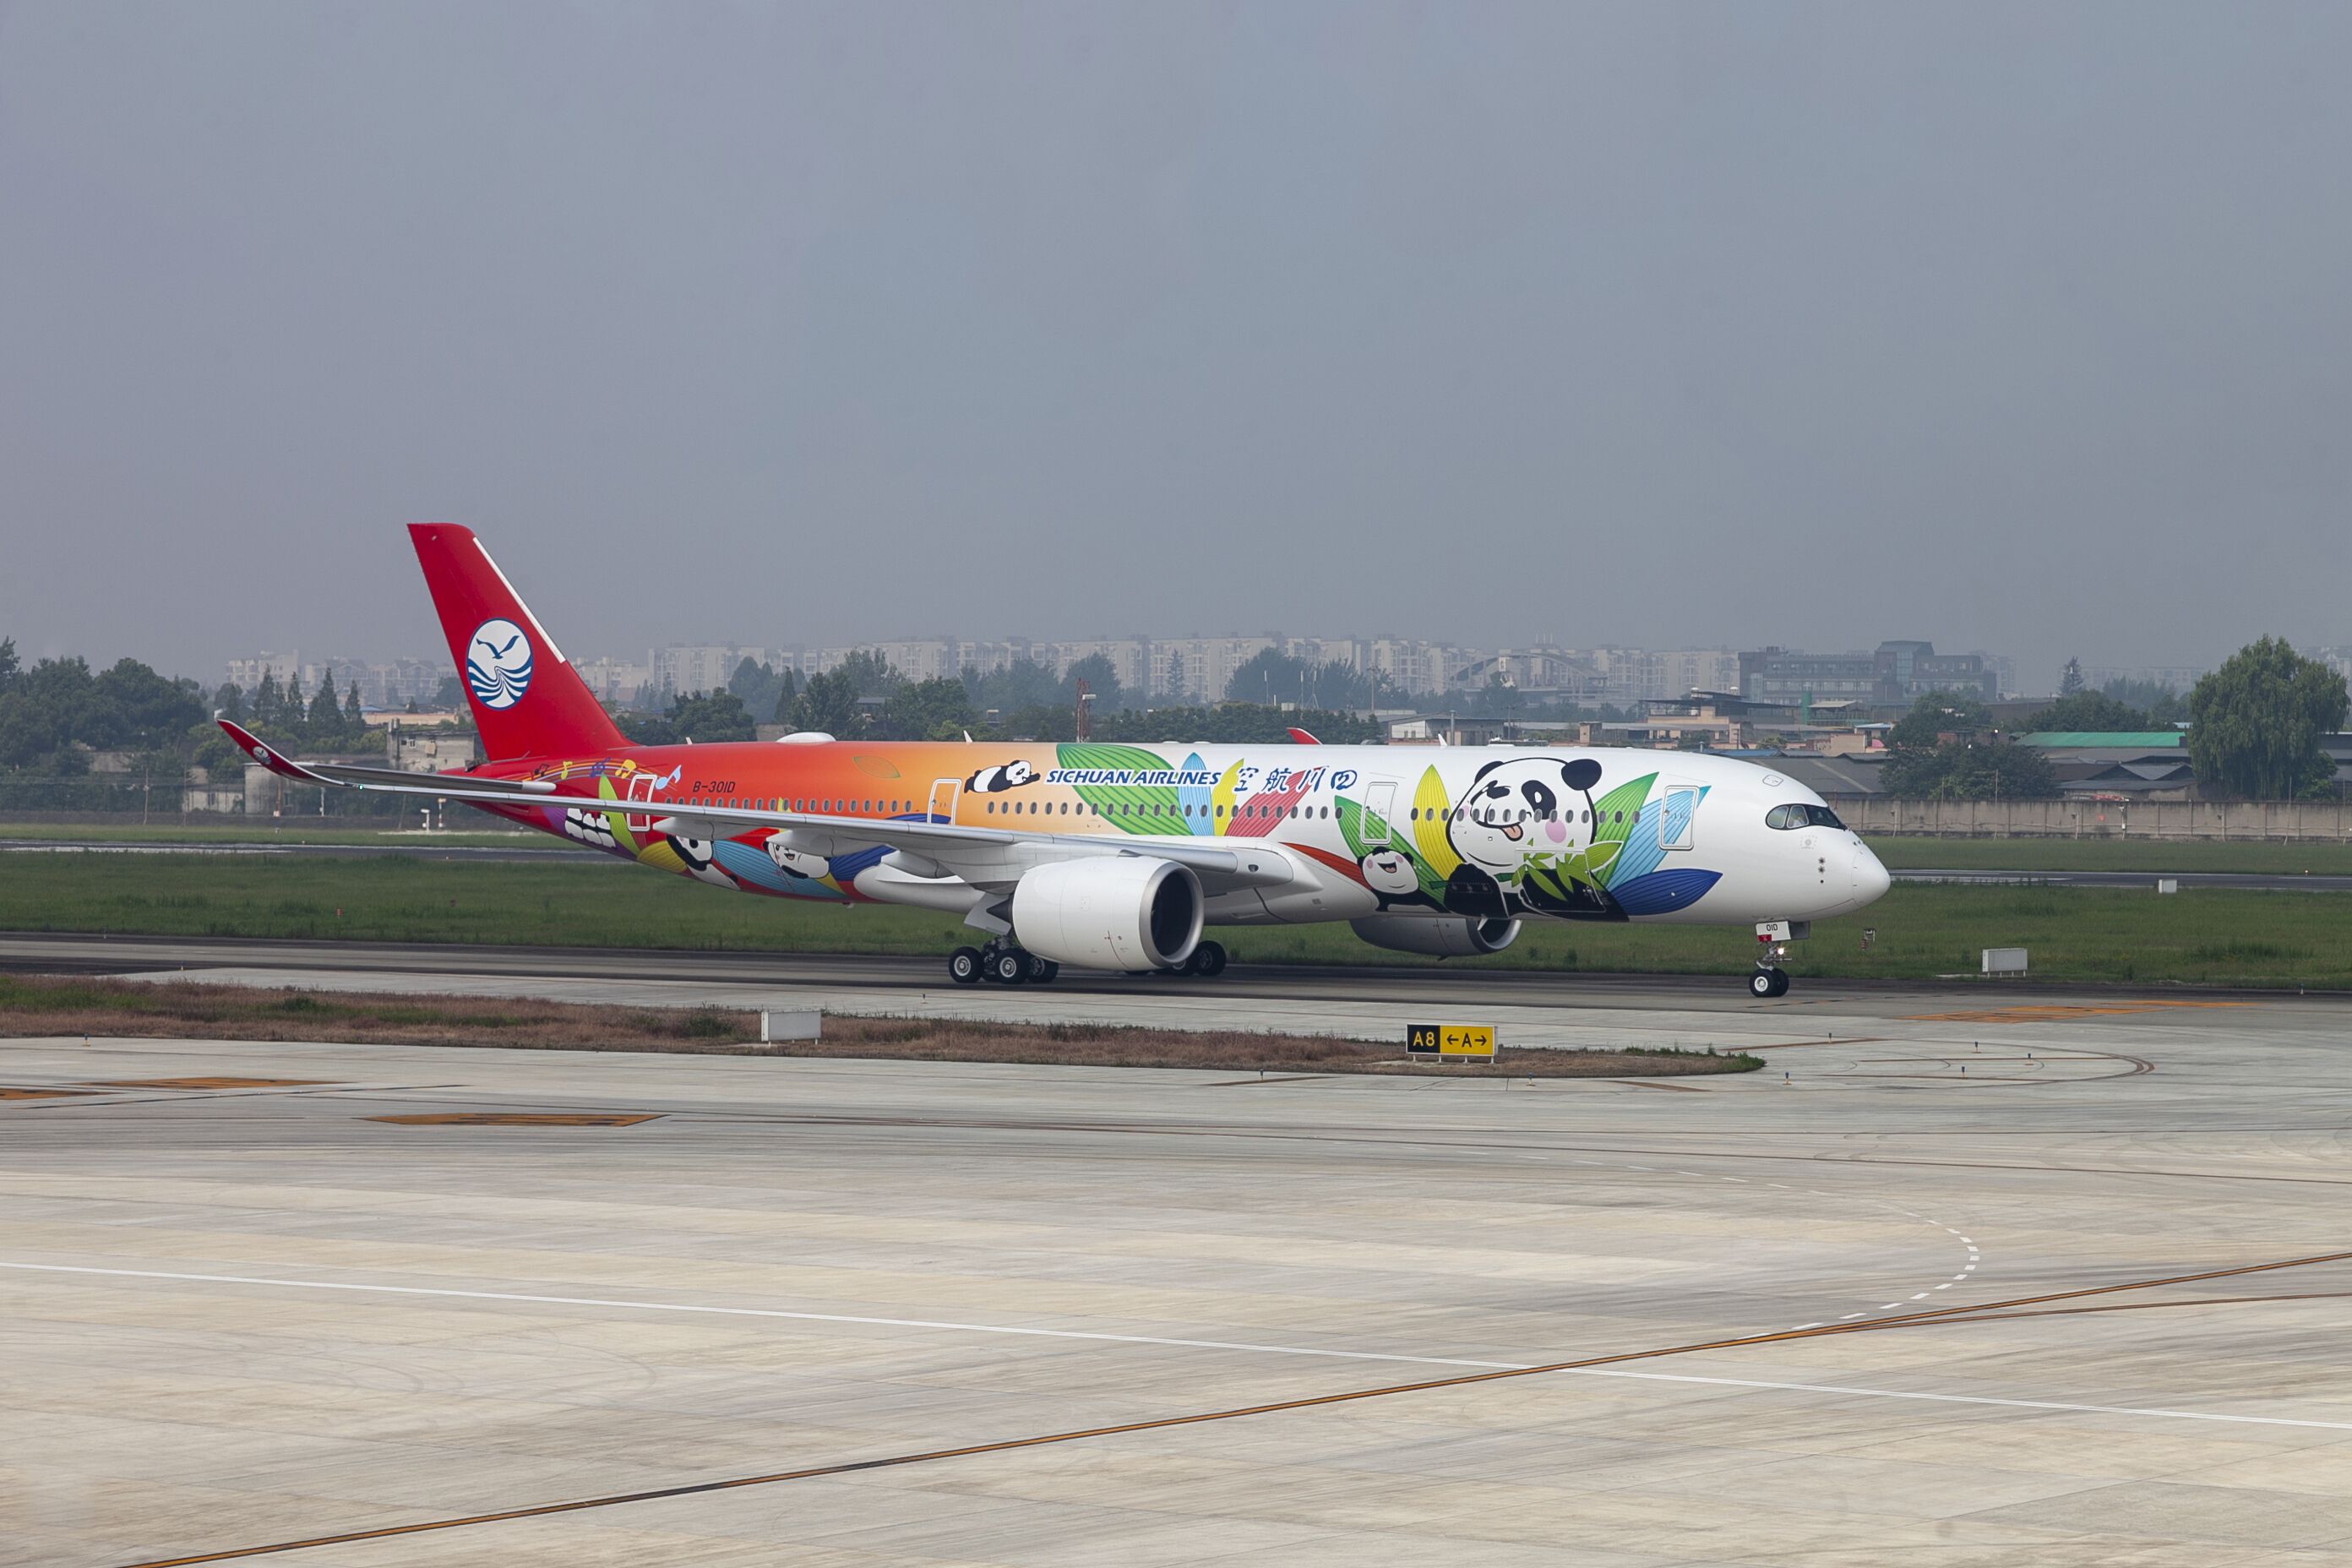 历时10小时的空中飞行,四川航空首架身披熊猫彩绘新装的空客a350飞机